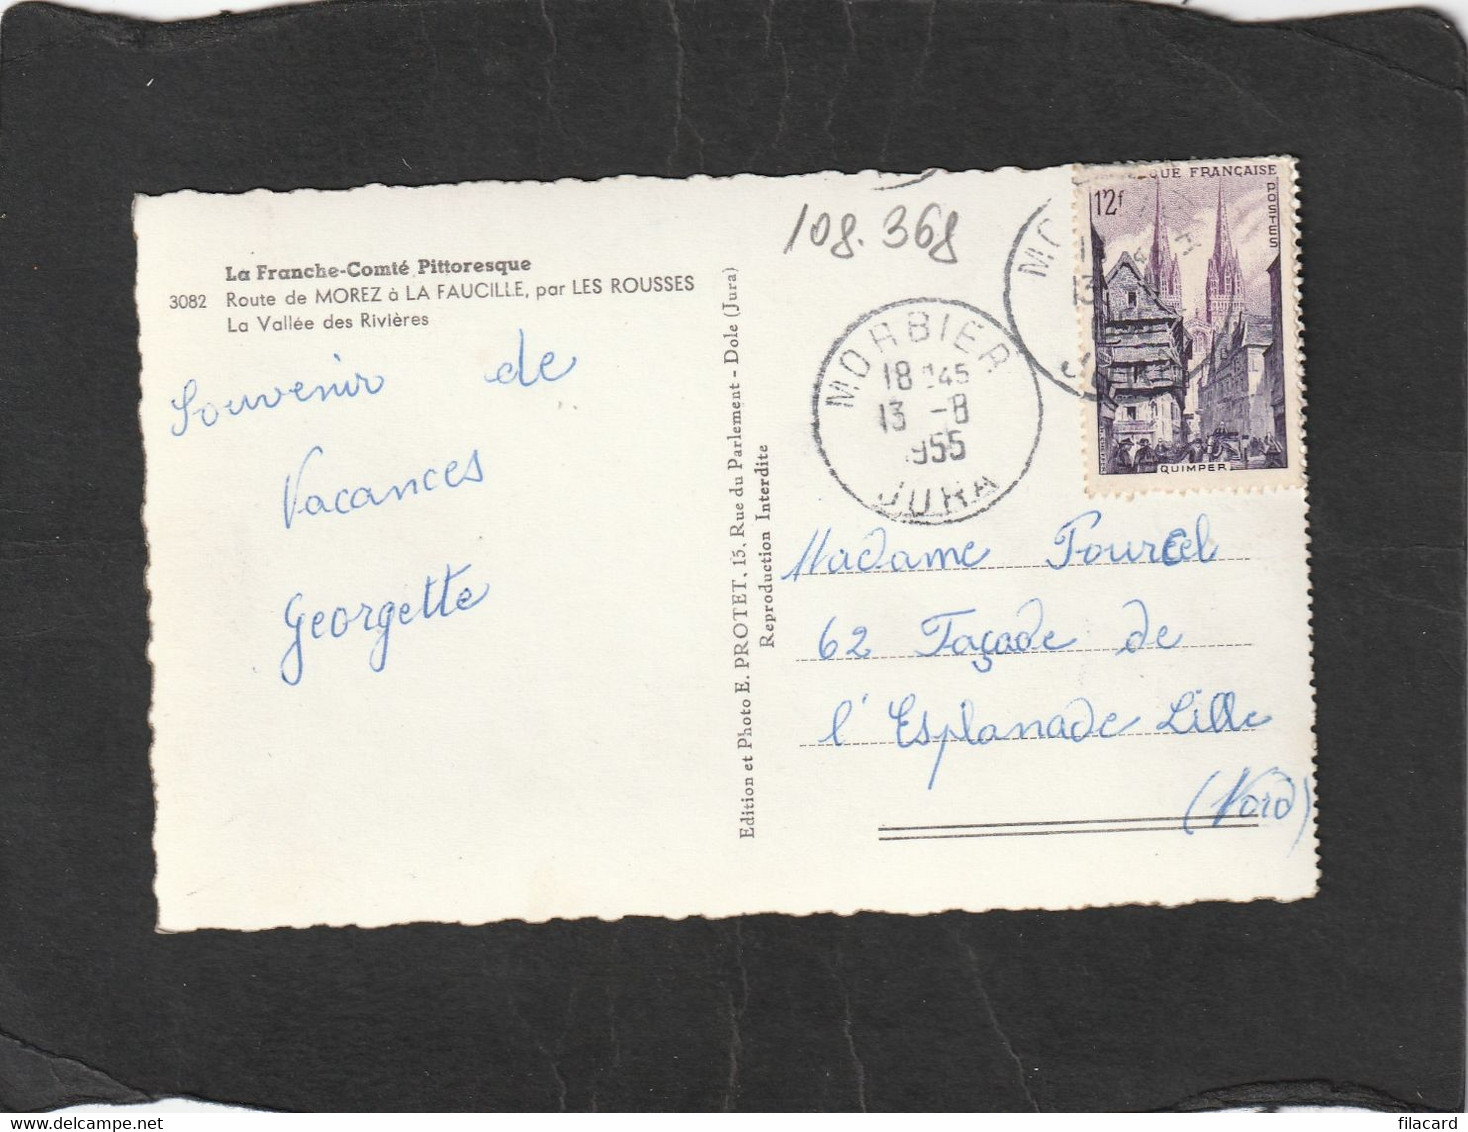 108368      Francia,     Route  De  Morez  A La Faucille,  Par Les  Rousses,  La  Vallee Des Rivieres,  VG  1955 - Franche-Comté